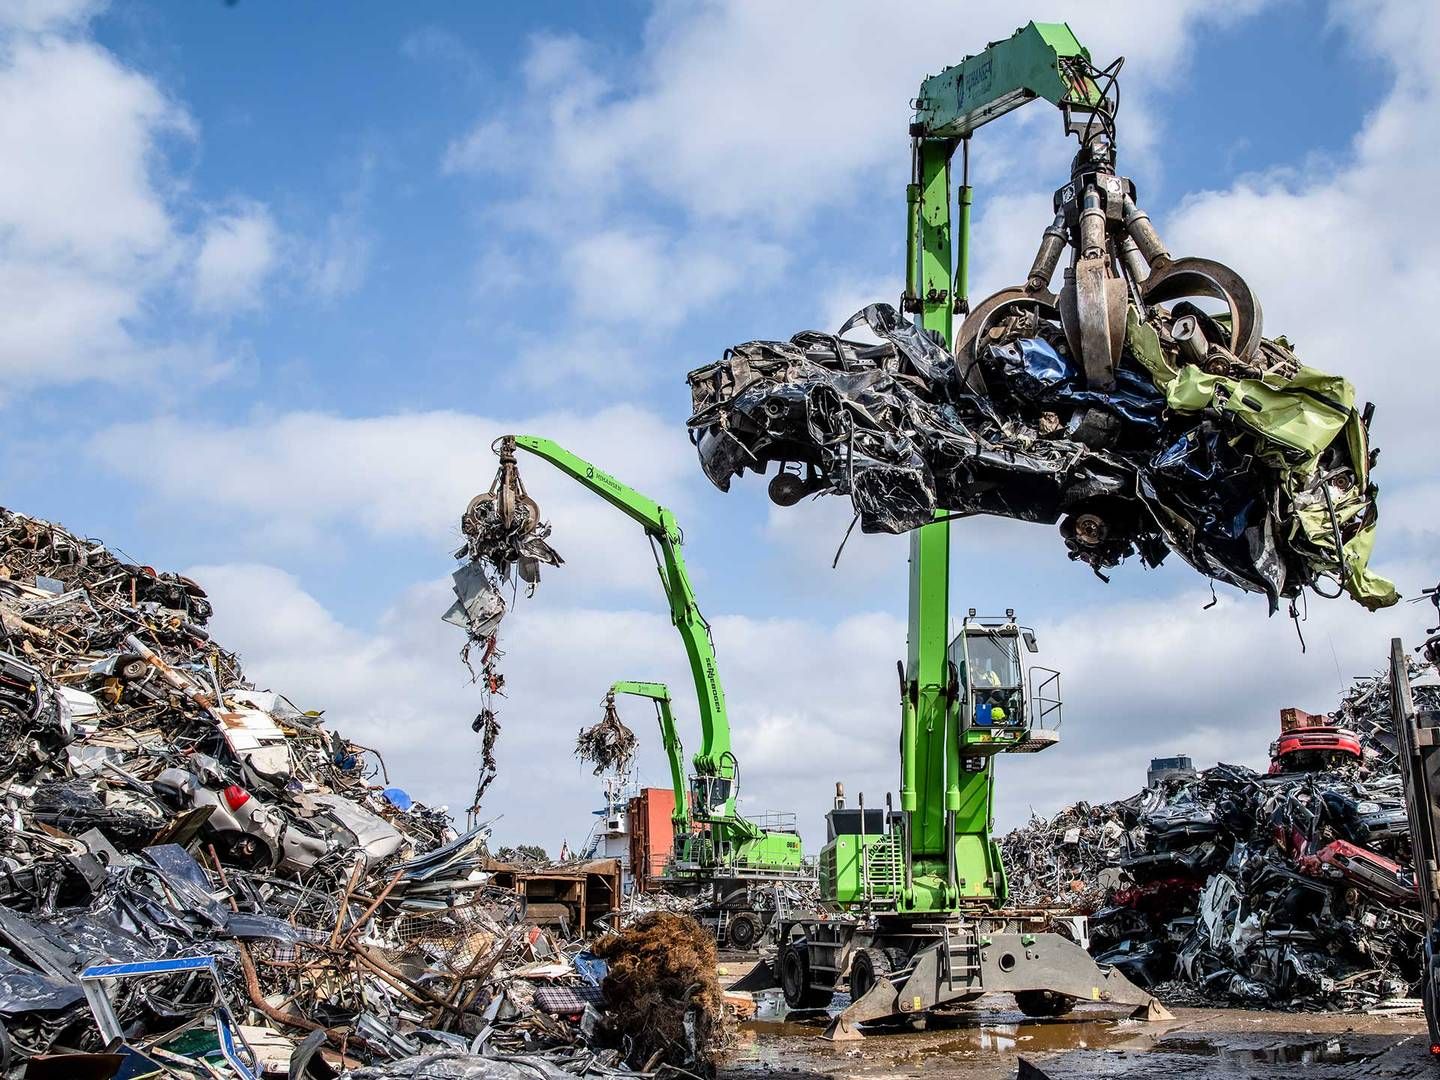 H.J. Hansen Recycling Group, der har hovedsæde i Odense, er en af Danmarks største genvindingsvirksomheder med en omsætning i seneste regnskabsår på 2,85 mia. kr. | Photo: H.J. Hansen Recycling Group/PR